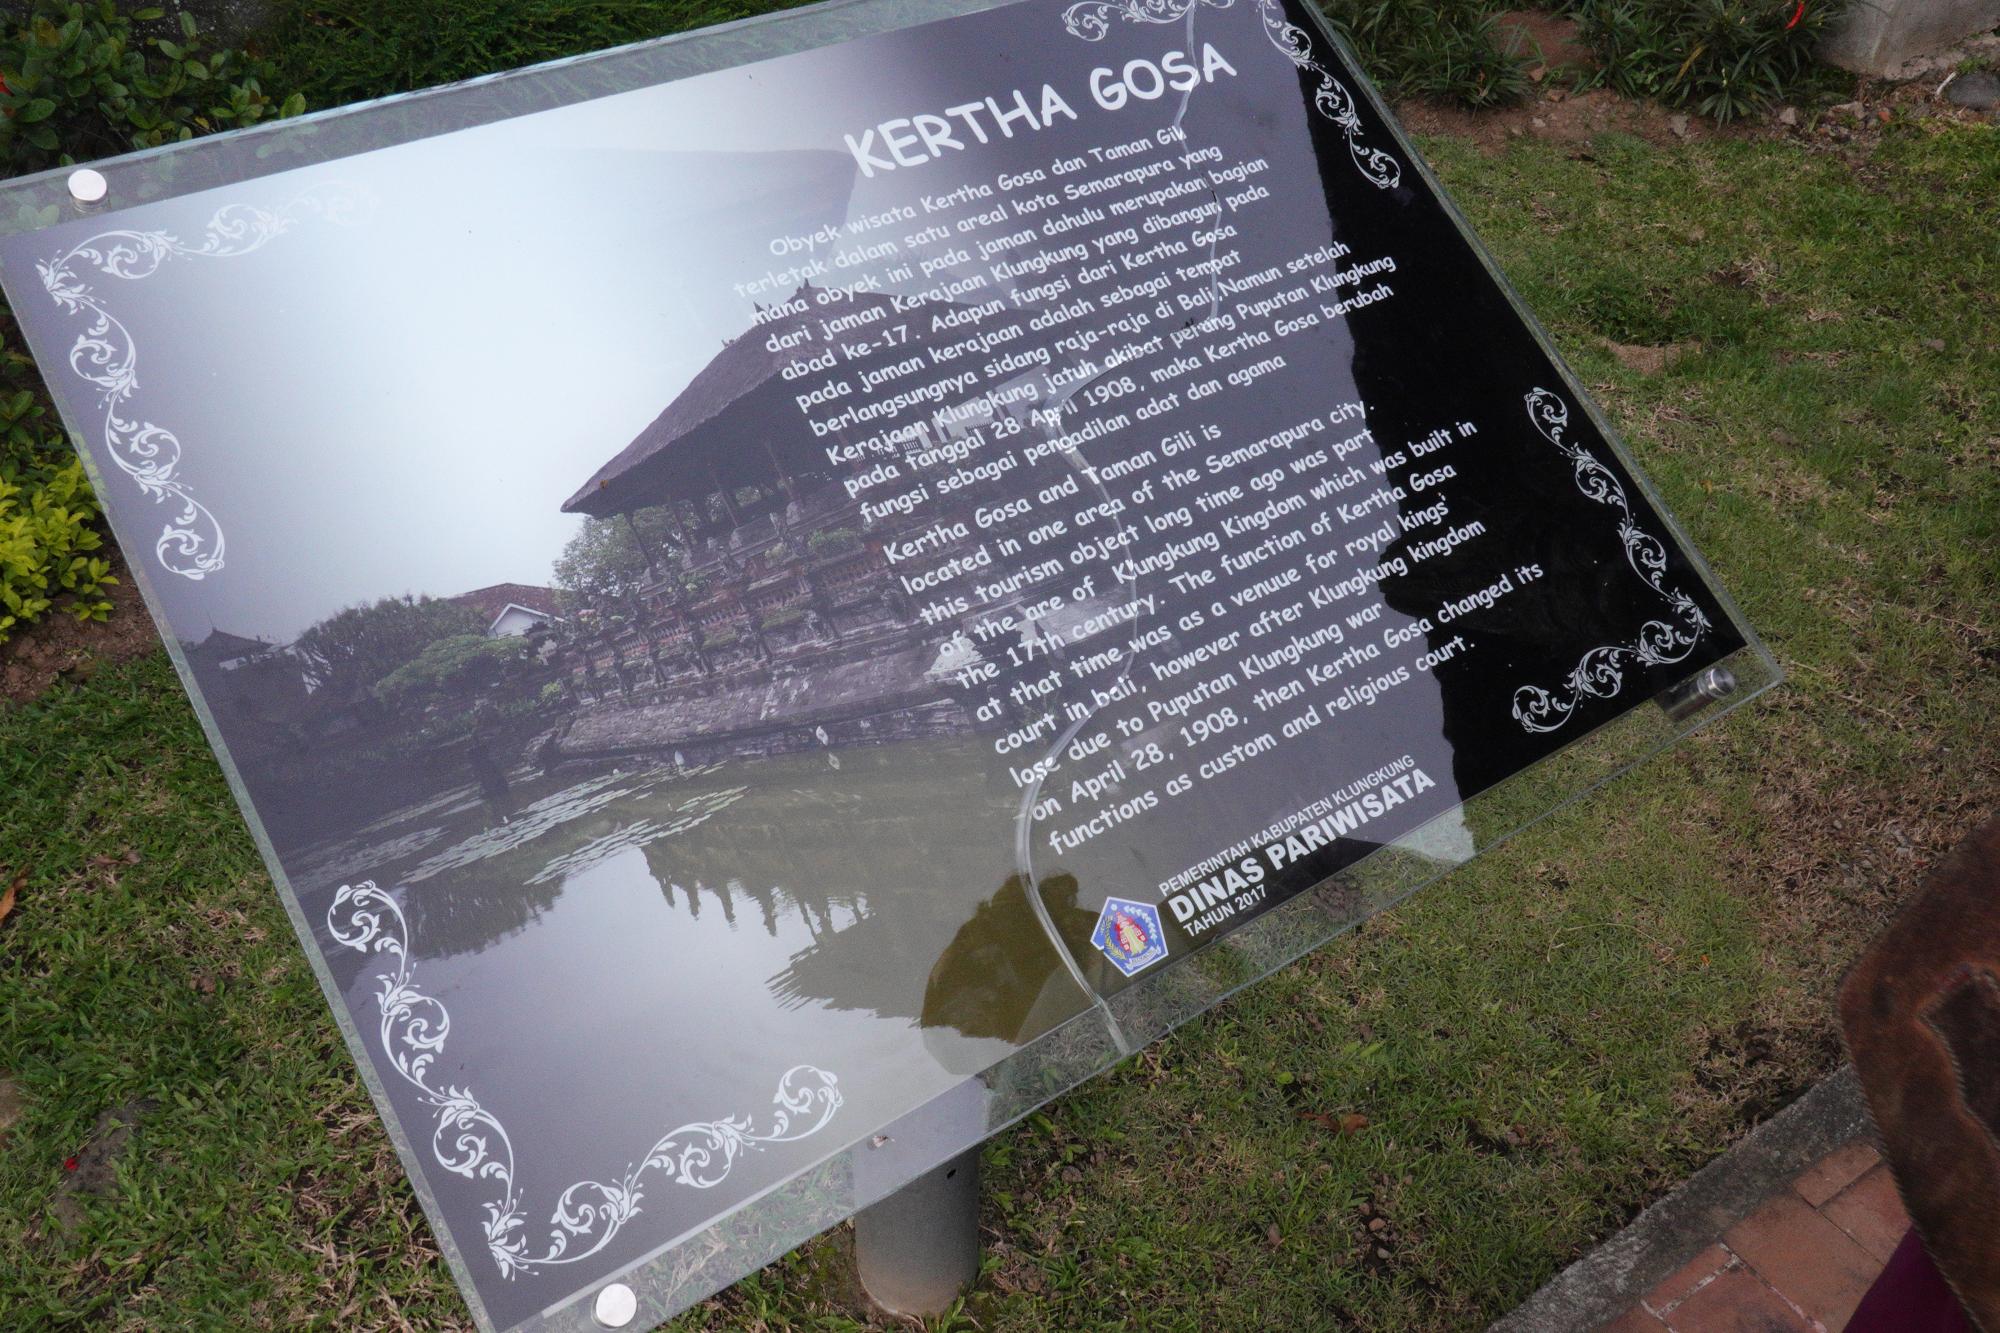 Bali - Taman Kertha Gosa #06